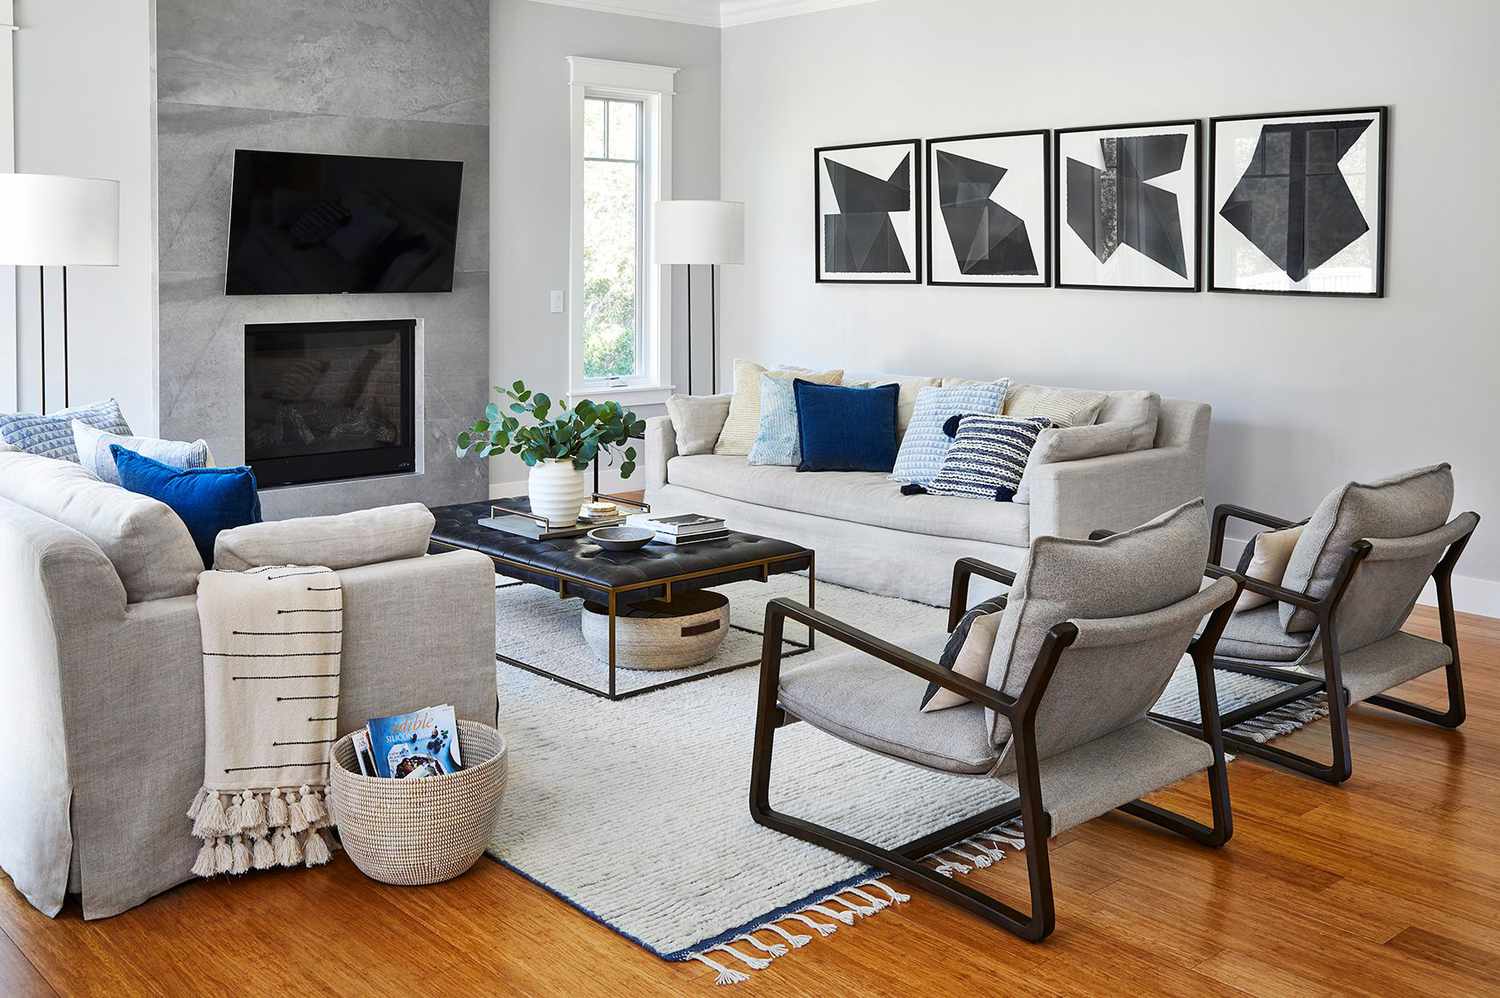 Sala de estar ampla com móveis e decoração cinza.